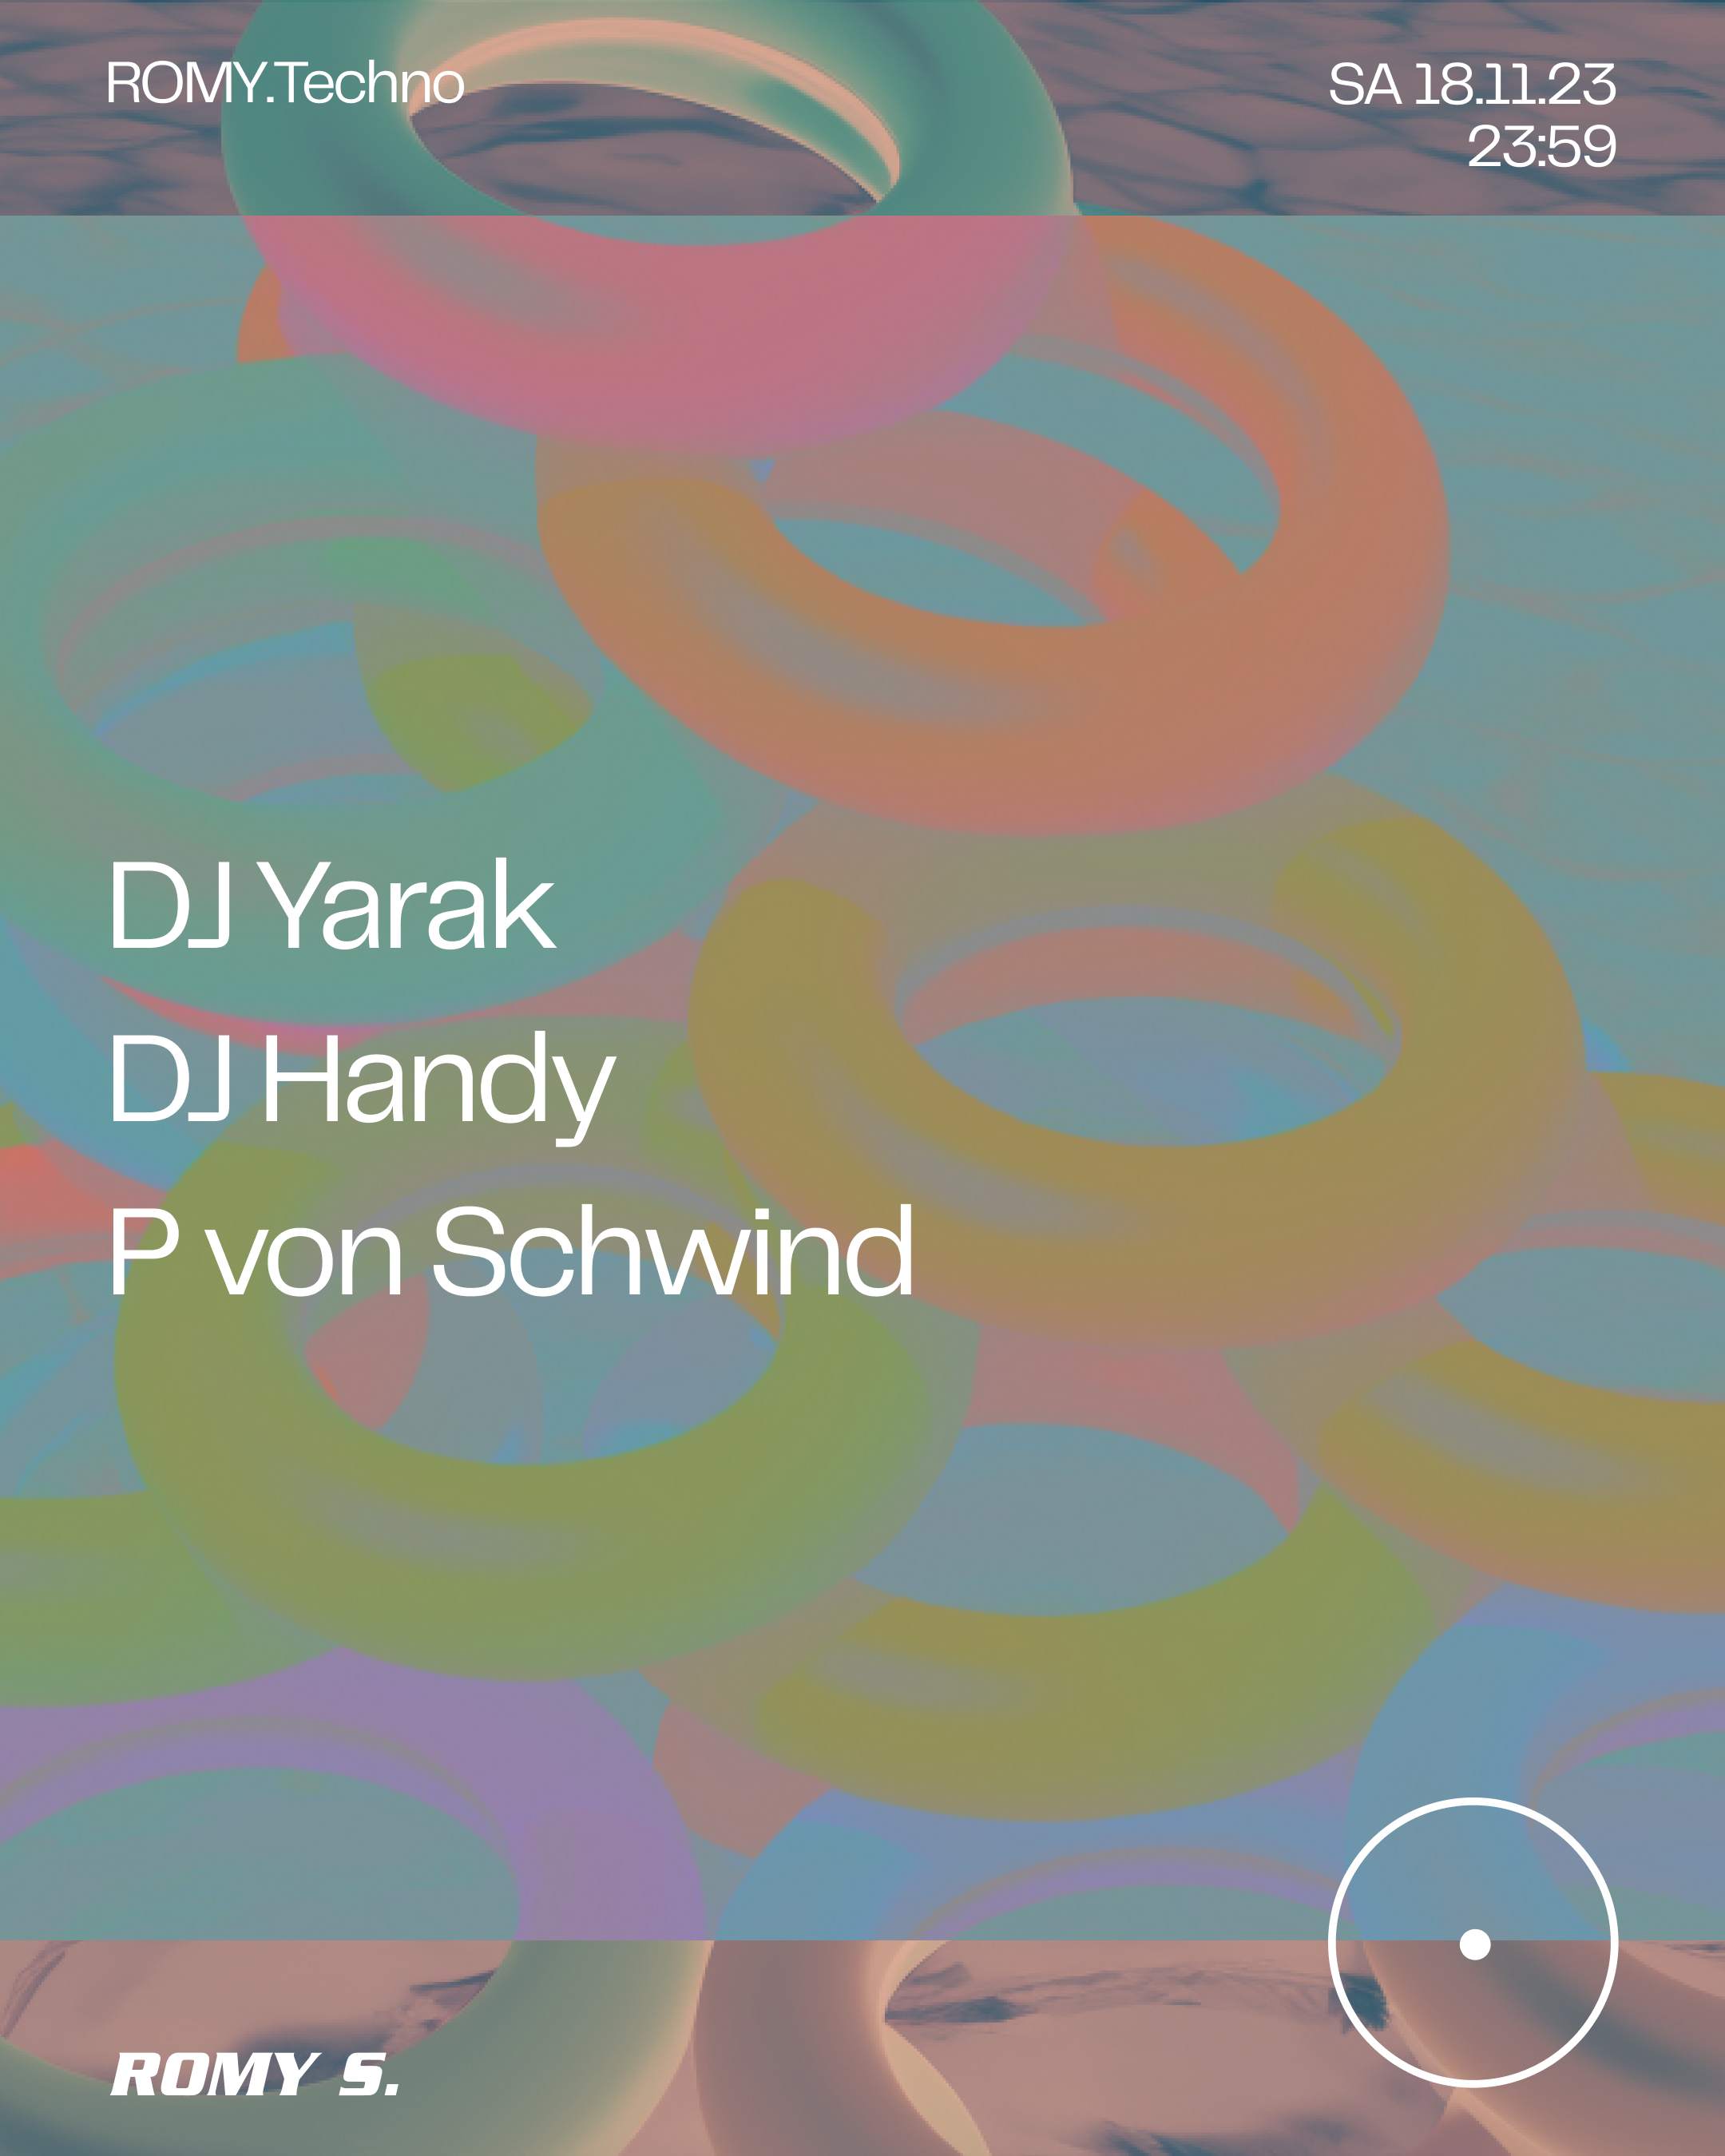 ROMY.Techno with DJ YARAK, DJ Handy & P. von Schwind - Página frontal